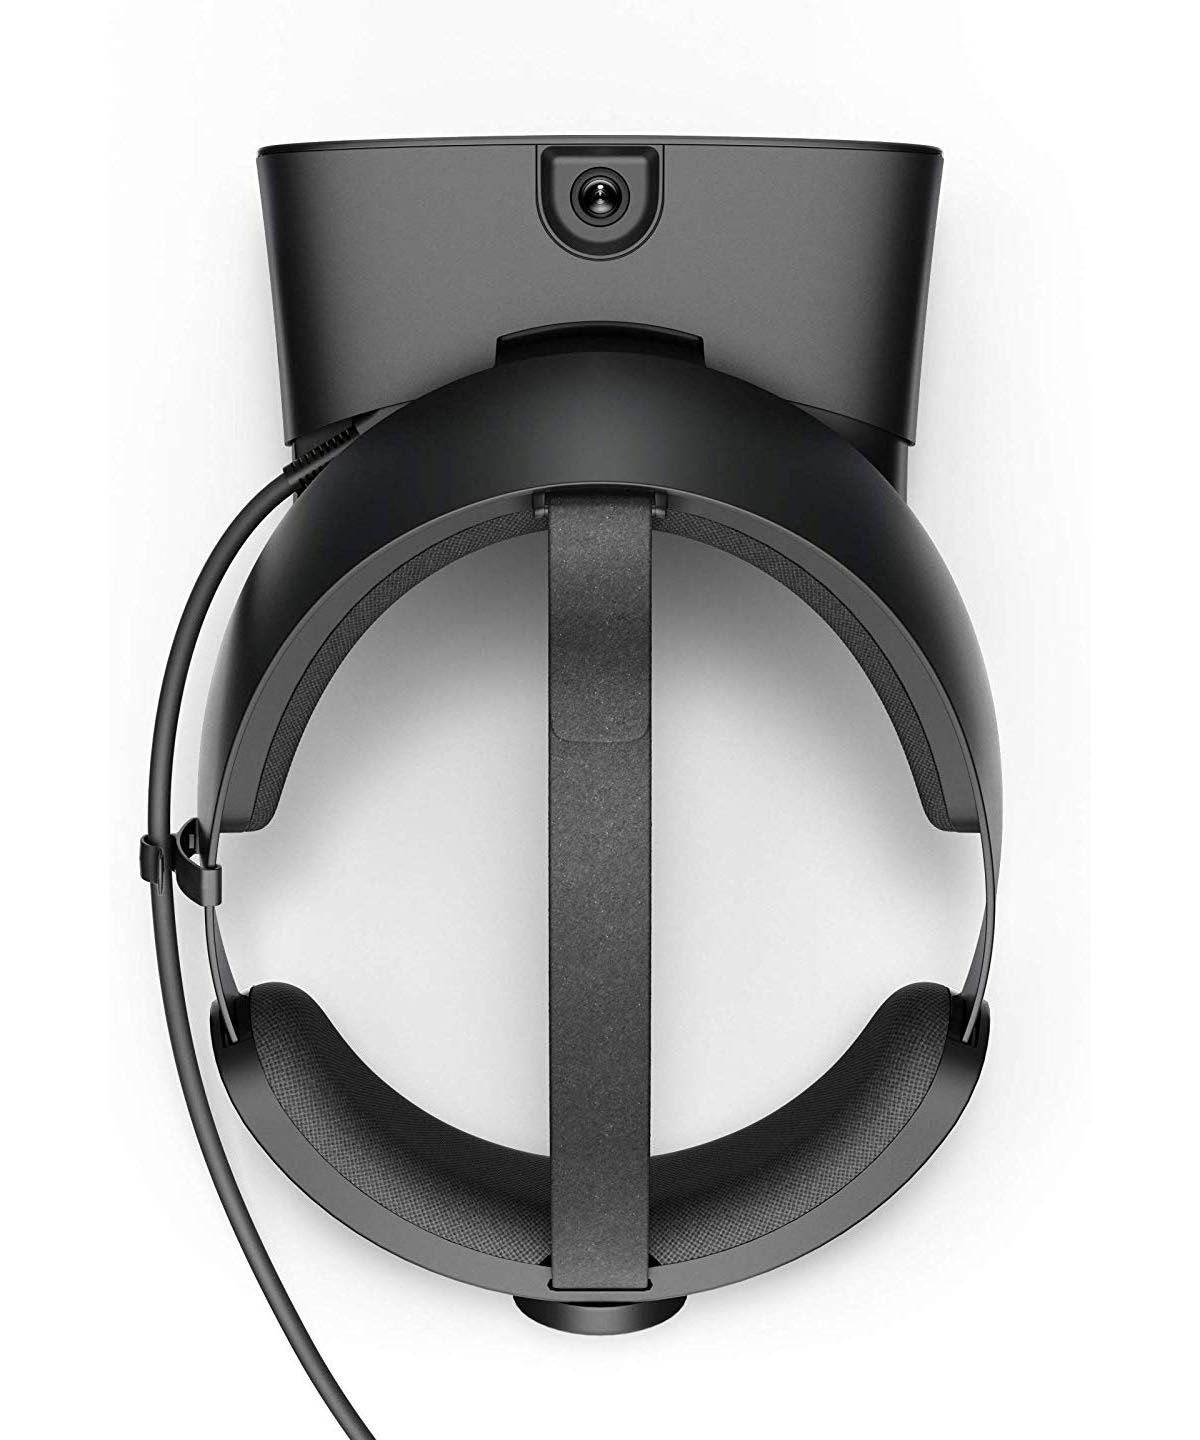 Oculus Rift S Virtual Reality System - Oculus Rift S Vietnam